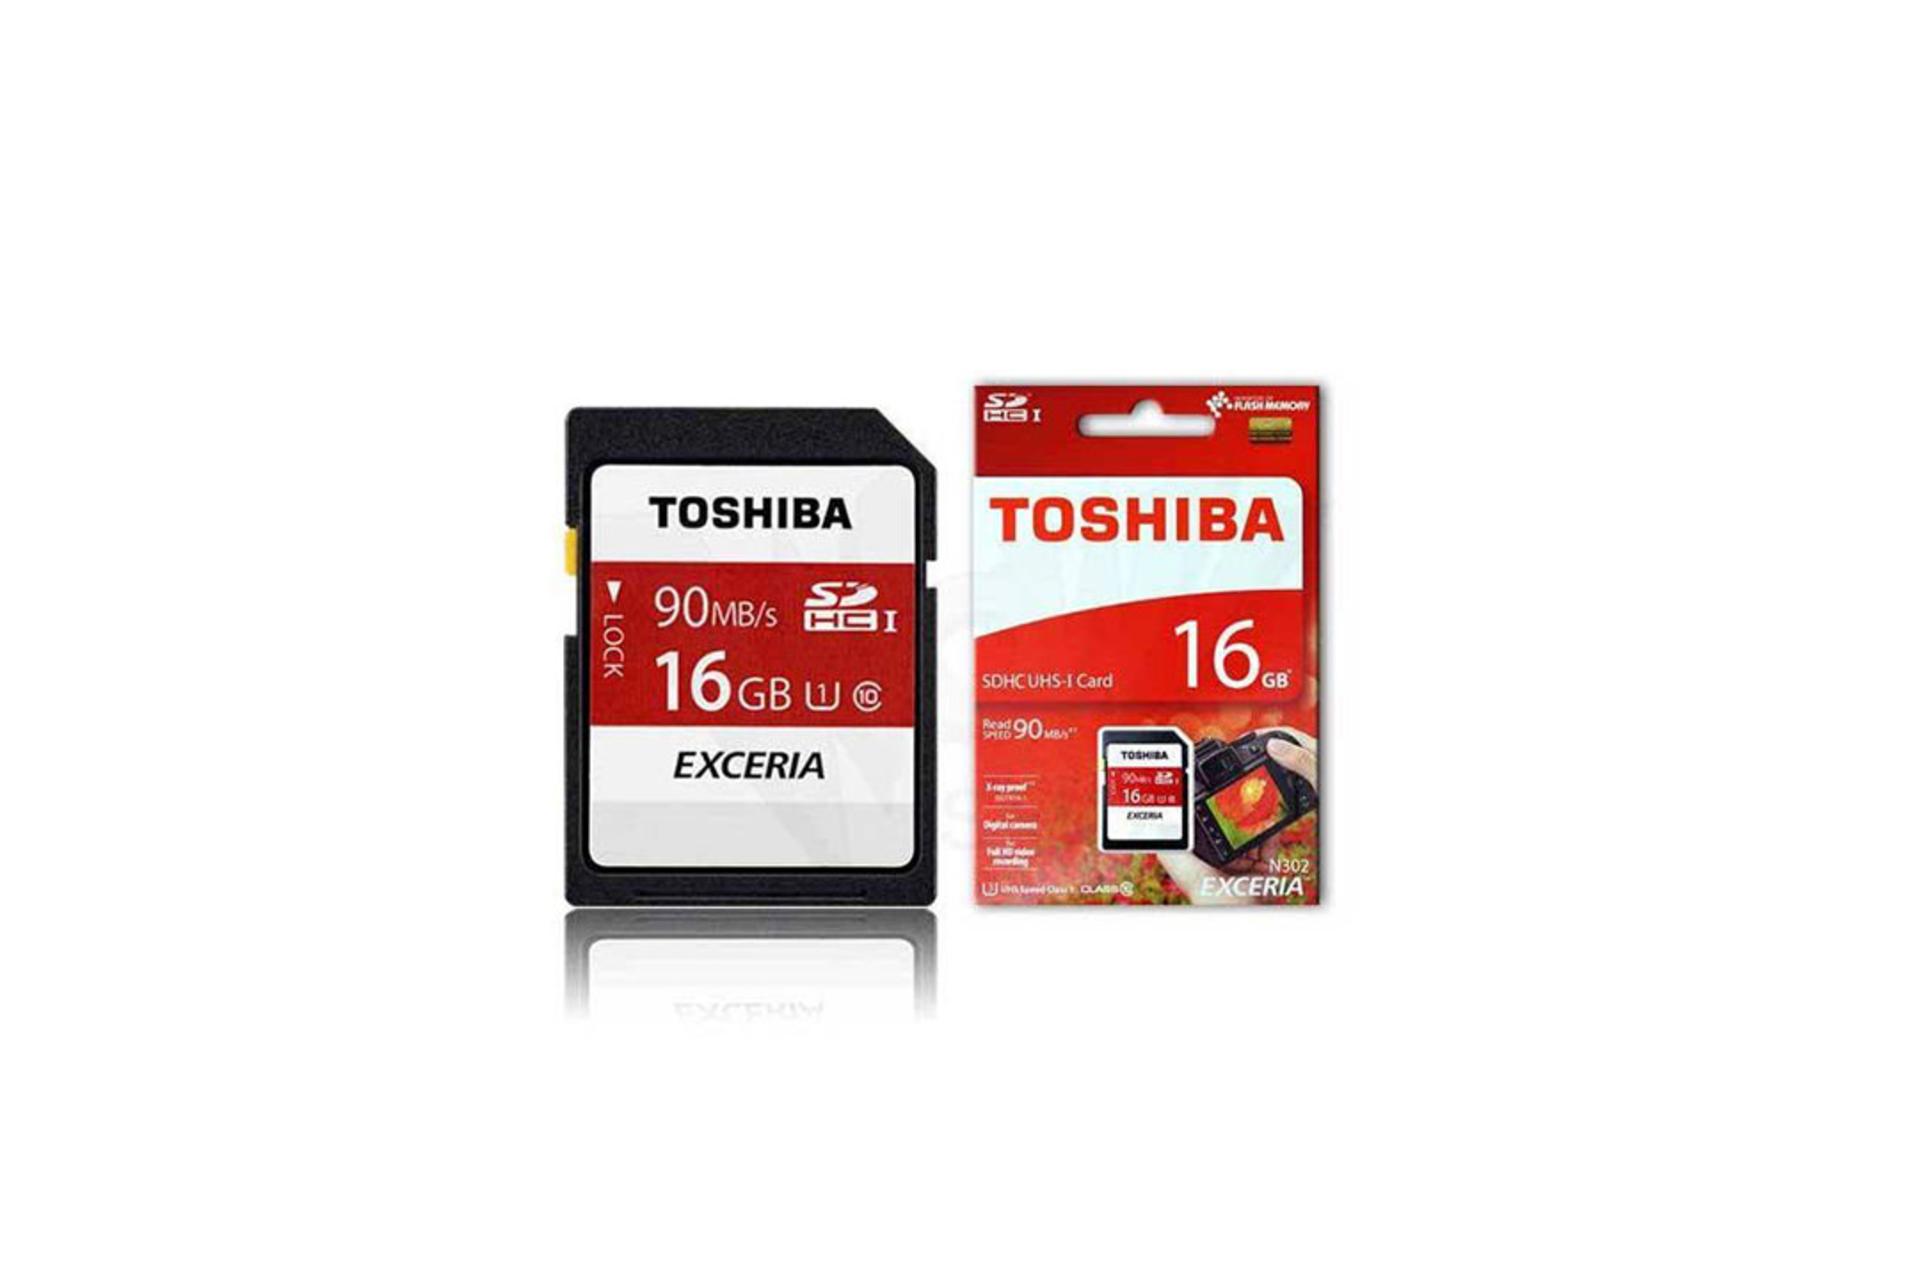 Toshiba Exceria N302 SDHC Class 10 UHS-I U1 16GB